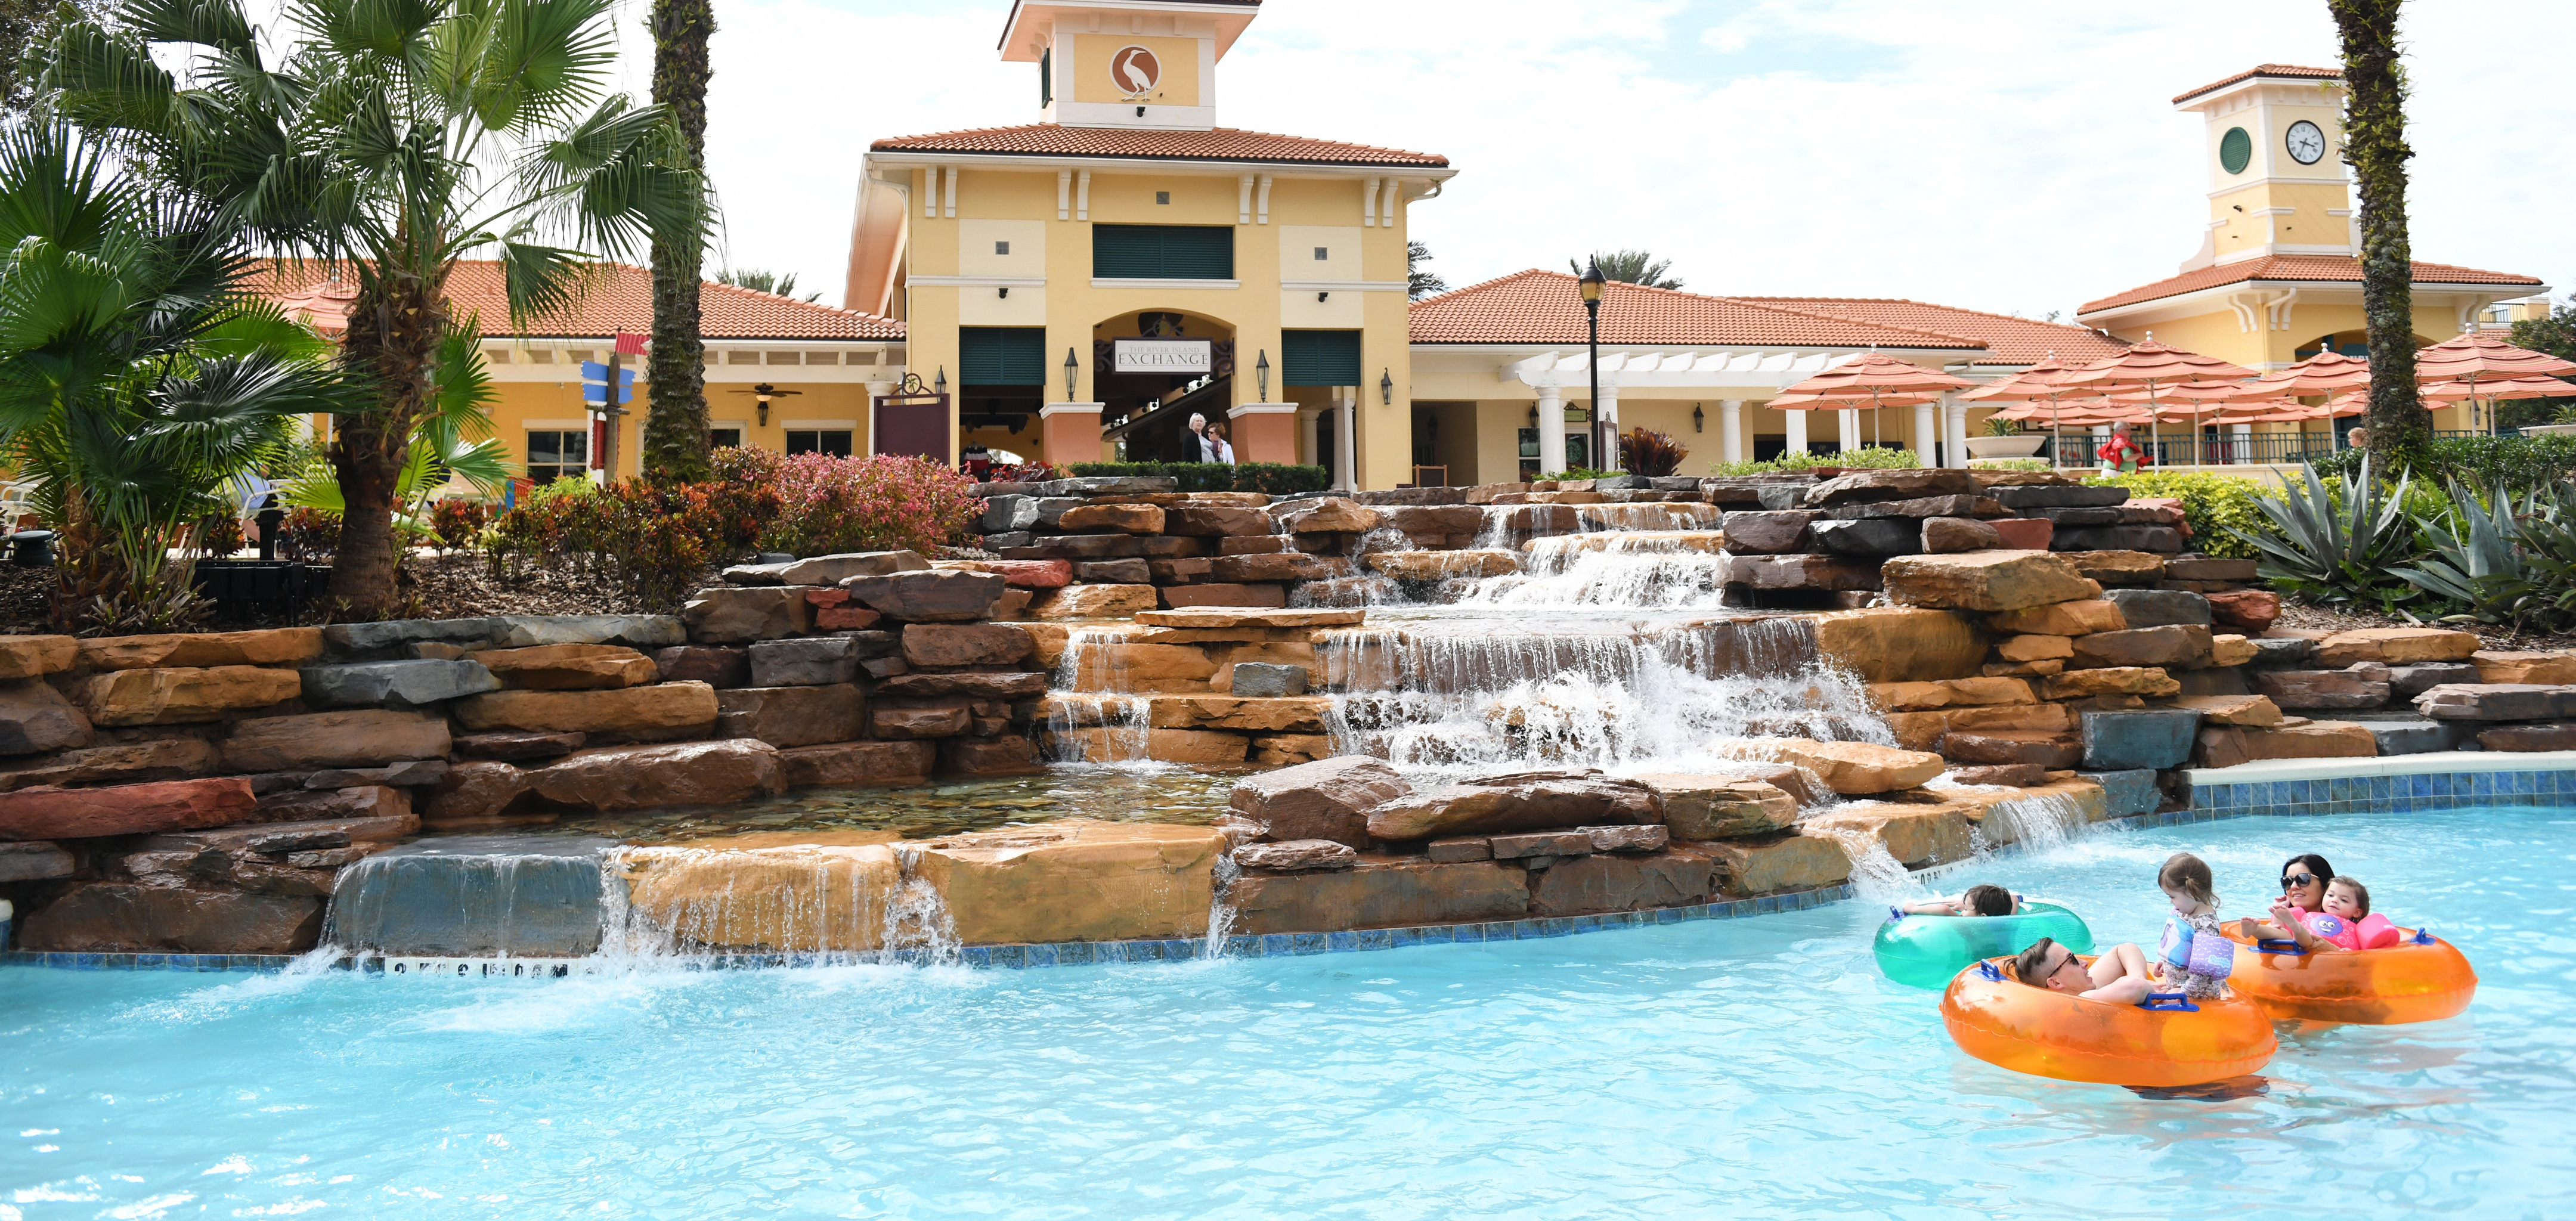 Khu nghỉ dưỡng Orange Lake tại Orlando sẽ mang đến cho bạn một trải nghiệm nghỉ ngơi tuyệt vời, với đầy đủ các hoạt động giải trí và tiện nghi. Hãy xem ảnh liên quan để thấy sự sang trọng, đẳng cấp của khu nghỉ dưỡng này và lên kế hoạch cho chuyến du lịch sắp tới của mình.